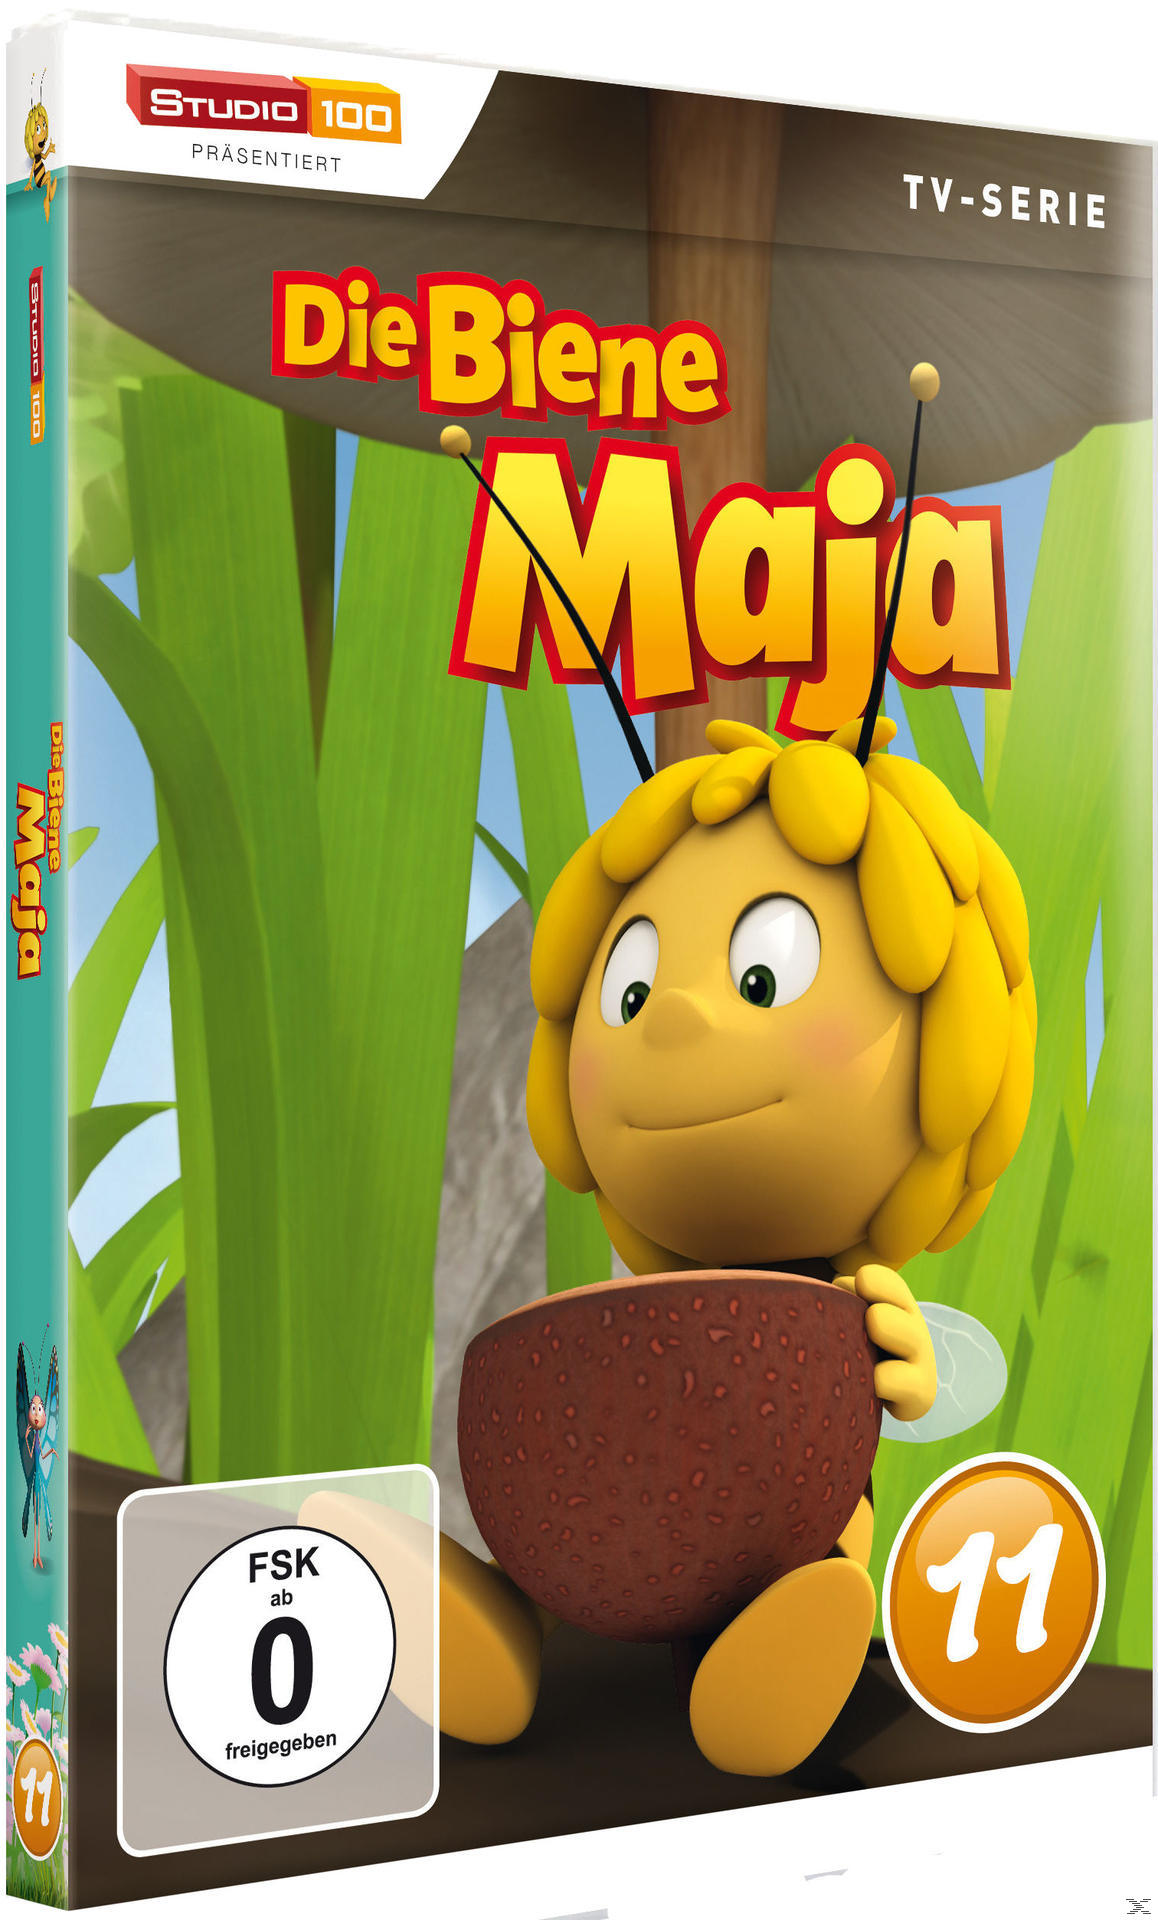 DVD 11 Maja DVD 3D - Biene Die